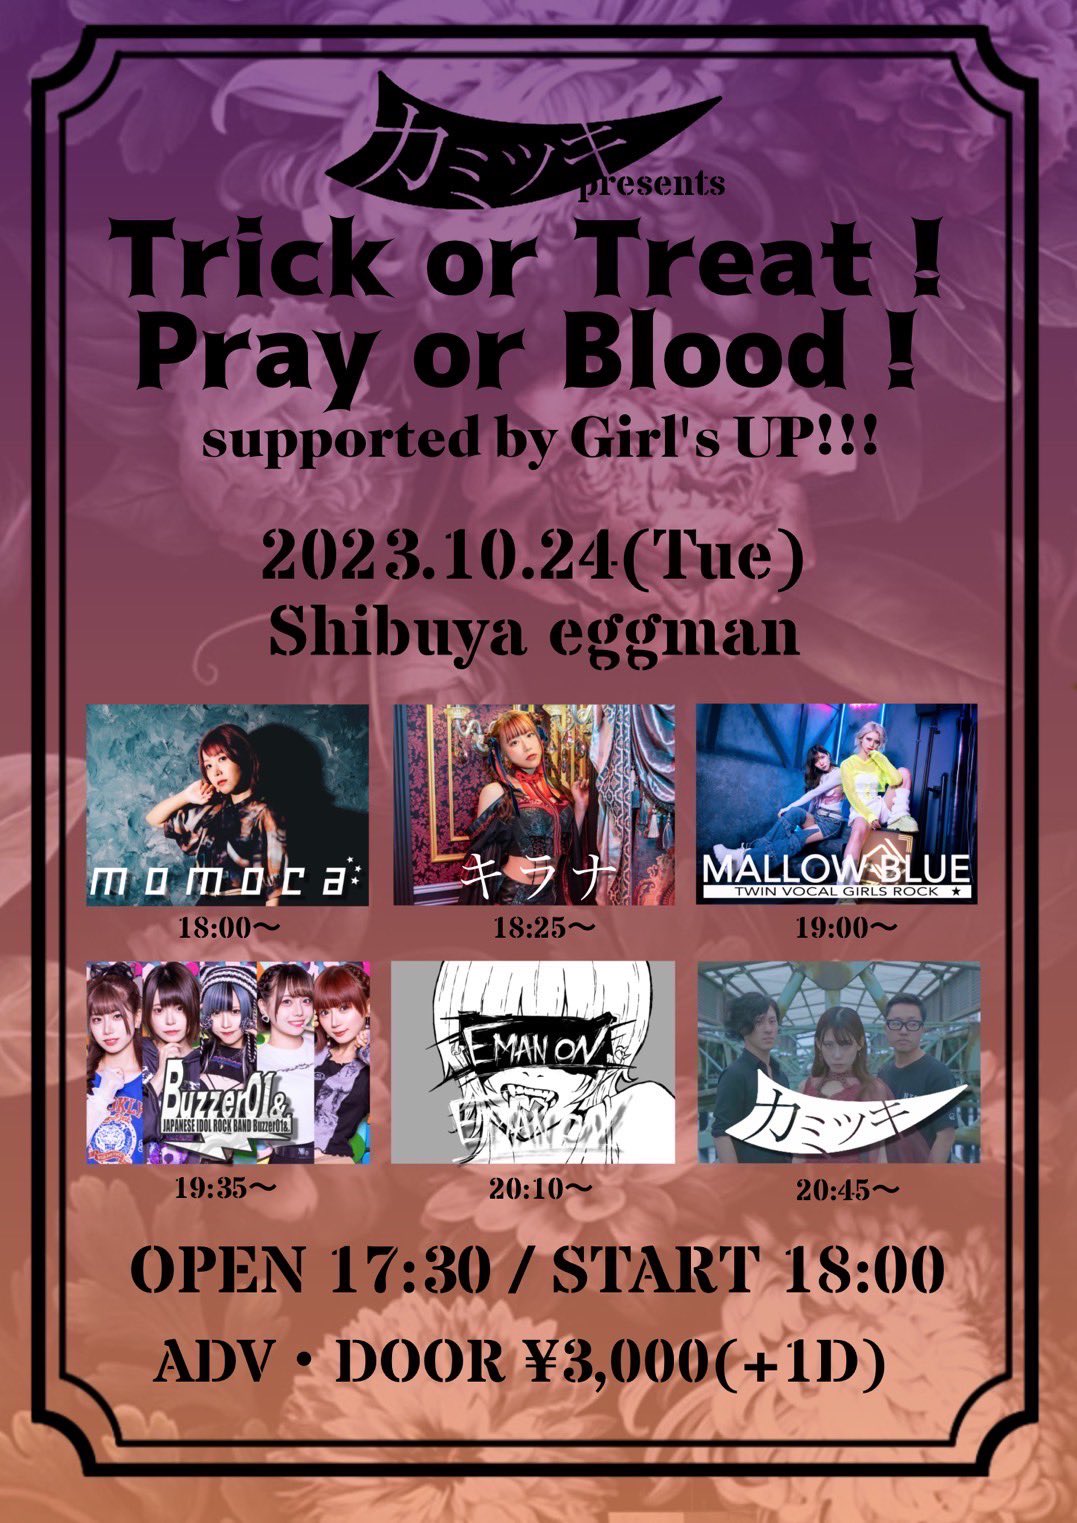 カミツキ presents Trick or Treat! Pray or Blood! supported by Girl’s UP!!!